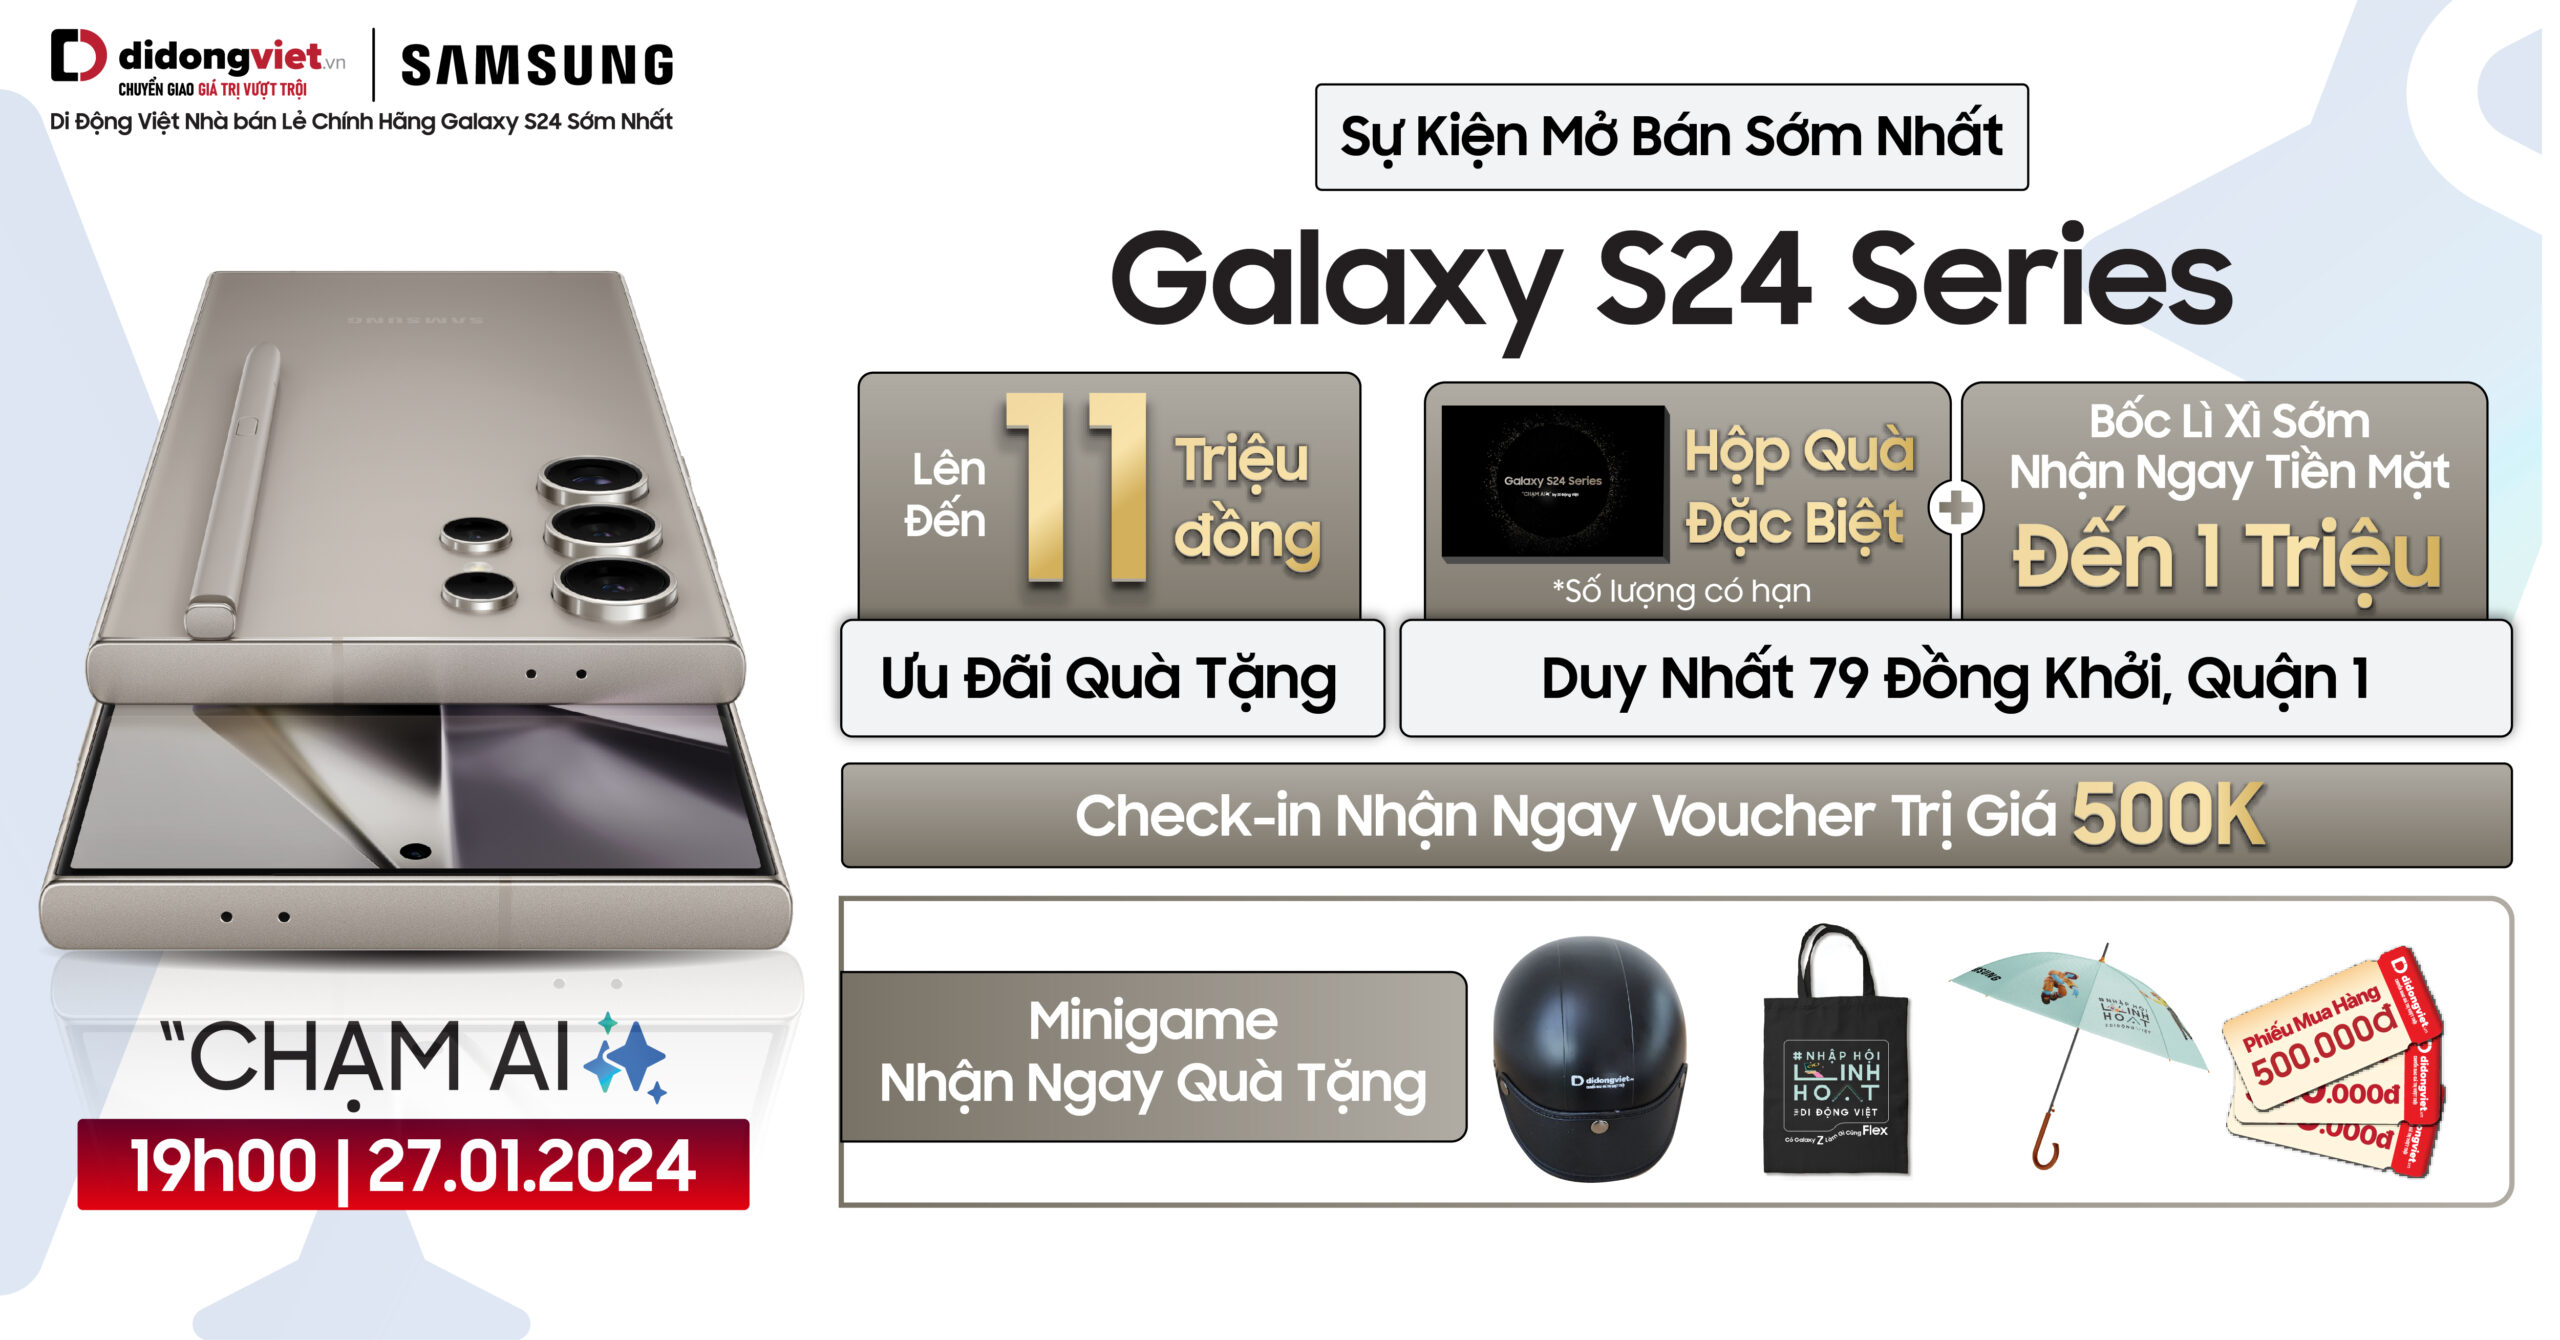 Sự kiện mở bán sớm nhất Galaxy S24 series tại Di Động Việt: Ưu đãi quà tặng lên đến 11 triệu, check-in nhận ngay voucher trị giá 500 ngàn và dùng thử miễn phí 14 ngày. Đặc biệt, nhận ngay hộp quà và hái lộc lì xì nhận ngay tiền mặt đến 1 triệu tại 79 Đồng Khởi, Quận 1.